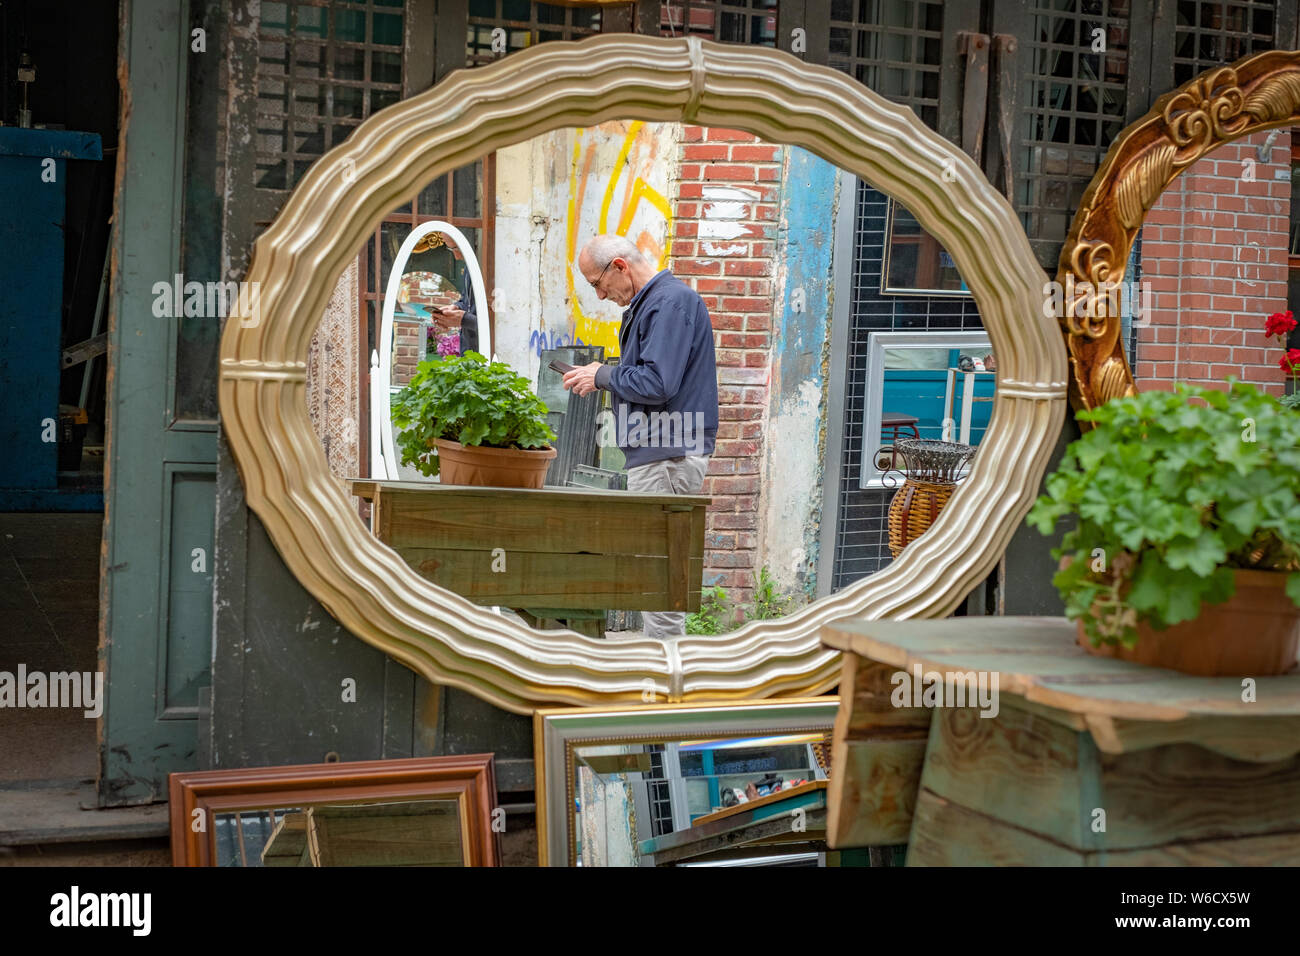 Vue d'un homme turc plus âgés dans un miroir trouvé dans un marché aux puces dans un quartier d'Istanbul, Turquie Banque D'Images